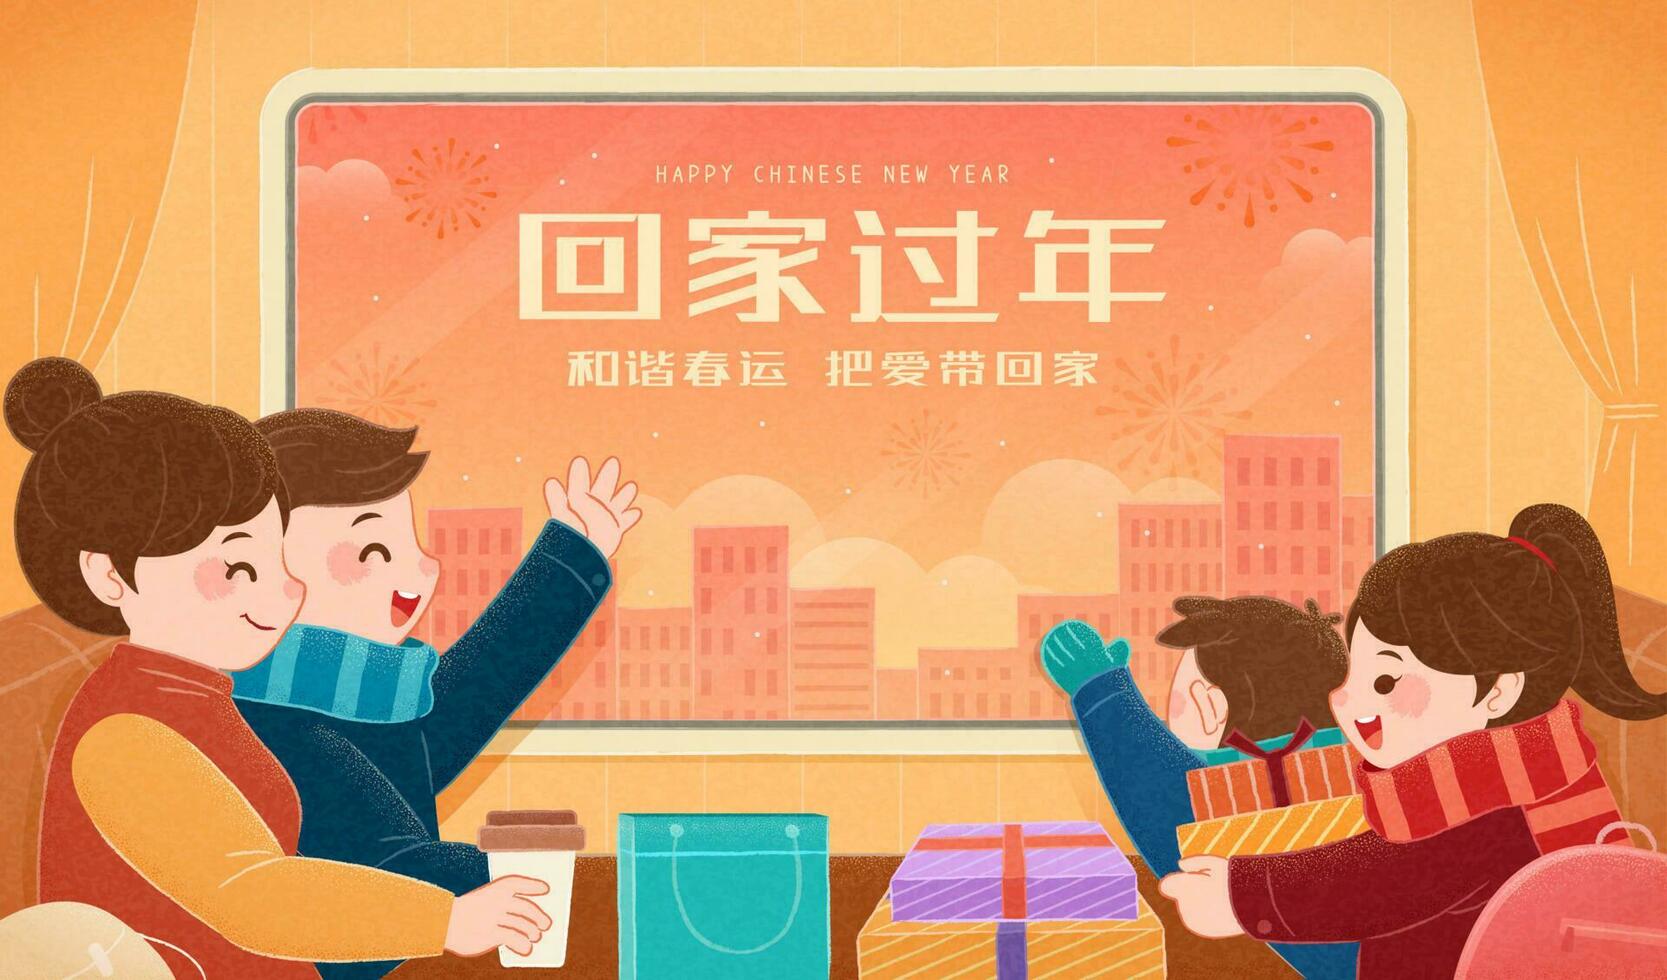 Chinese nieuw jaar reizen stormloop illustratie met schattig familie zittend Aan trein, vertaling, terugkeer huis en genieten familie bijeenkomst, reizen veilig en brengen liefde terug naar onze familie vector